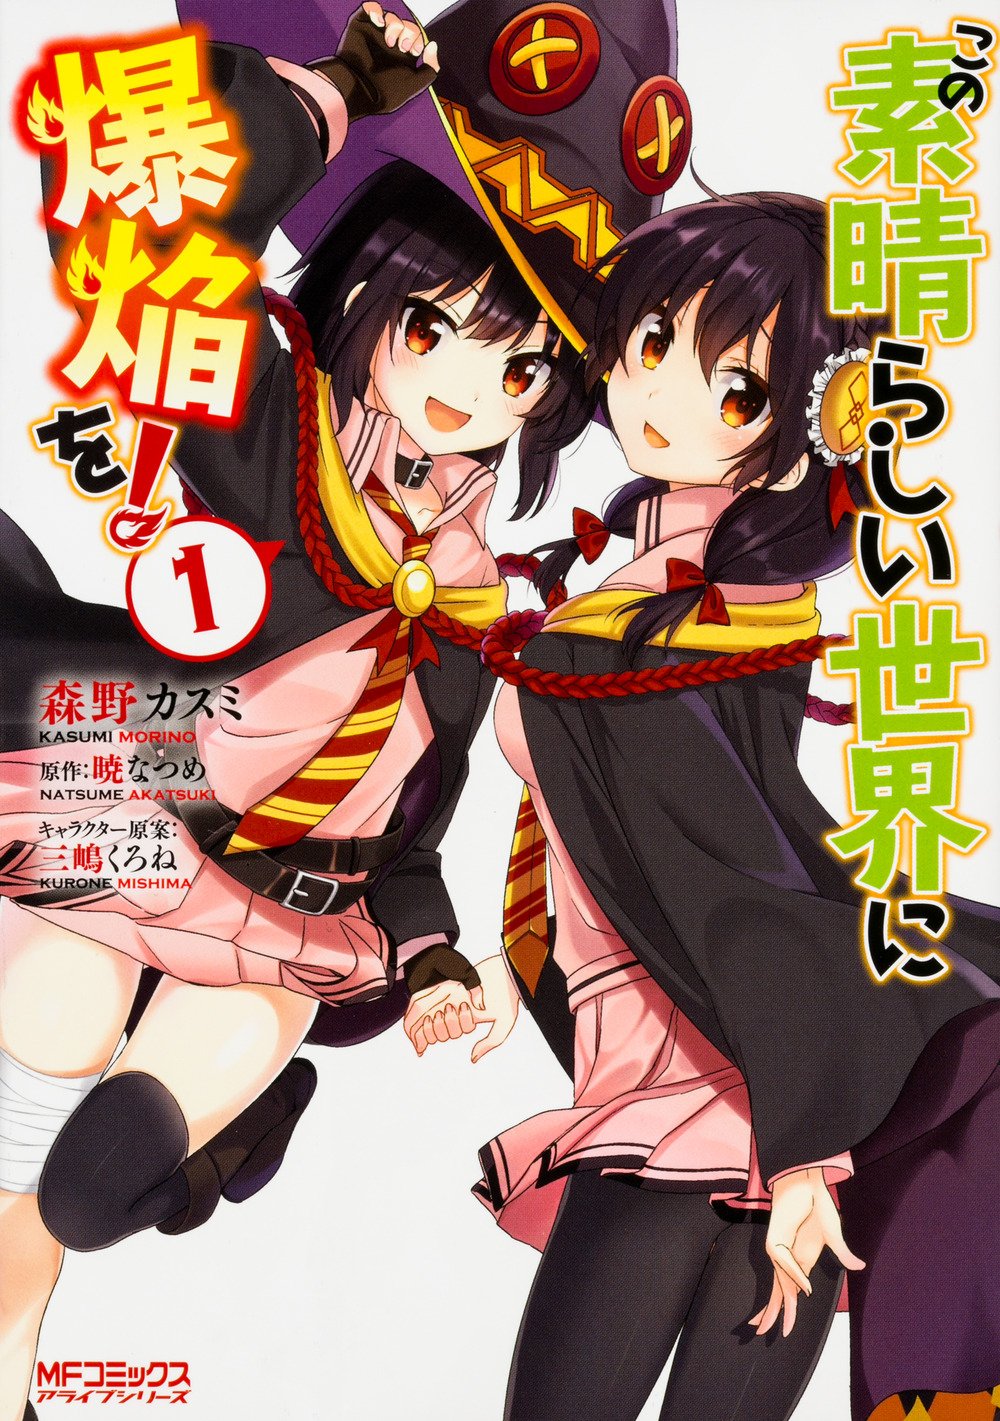 Isekai Quartet & Kono Subarashii Sekai ni Shukufuku wo! 2   &  Maikuando.TV - Anime & Manga Community Forum